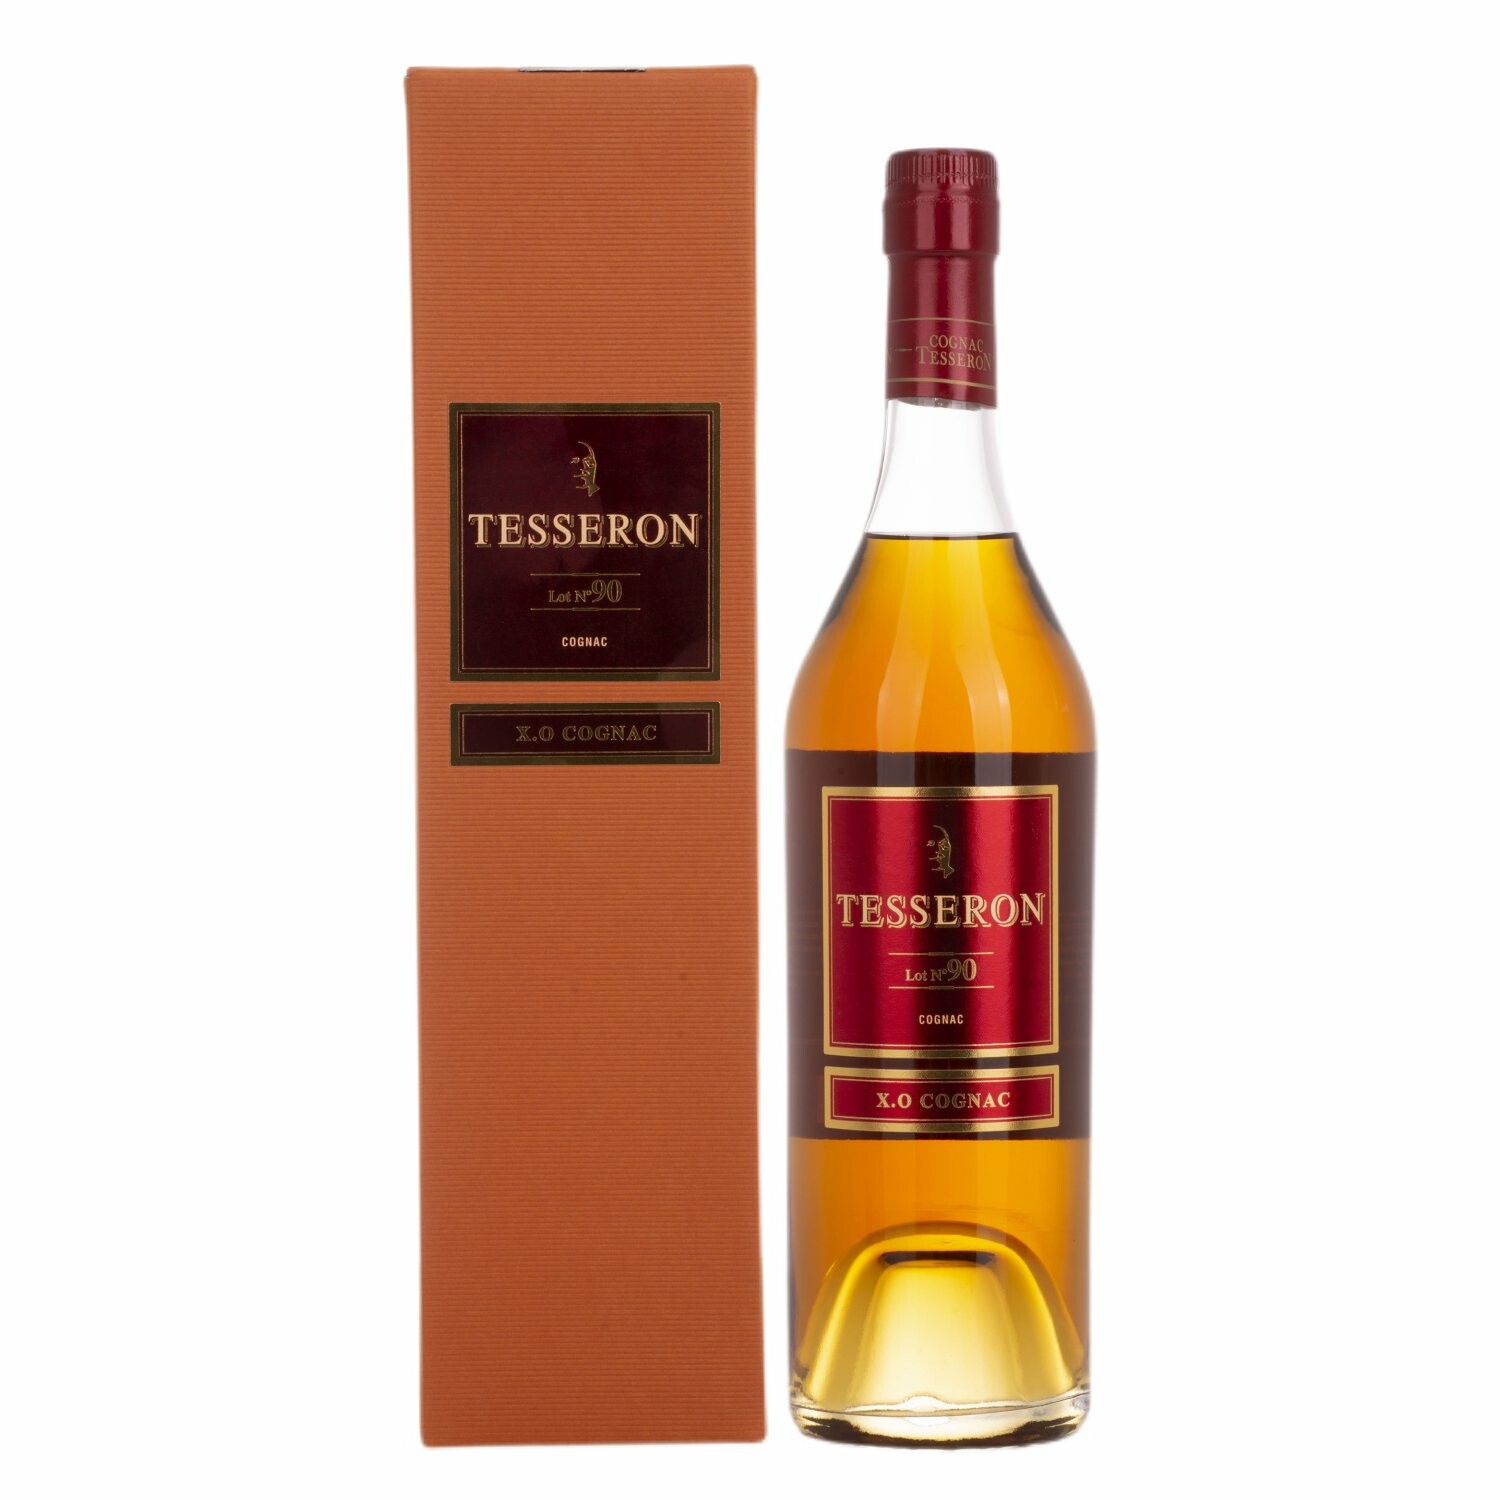 Tesseron Cognac XO Cognac LOT N° 90 40% Vol. 0,7l in Giftbox